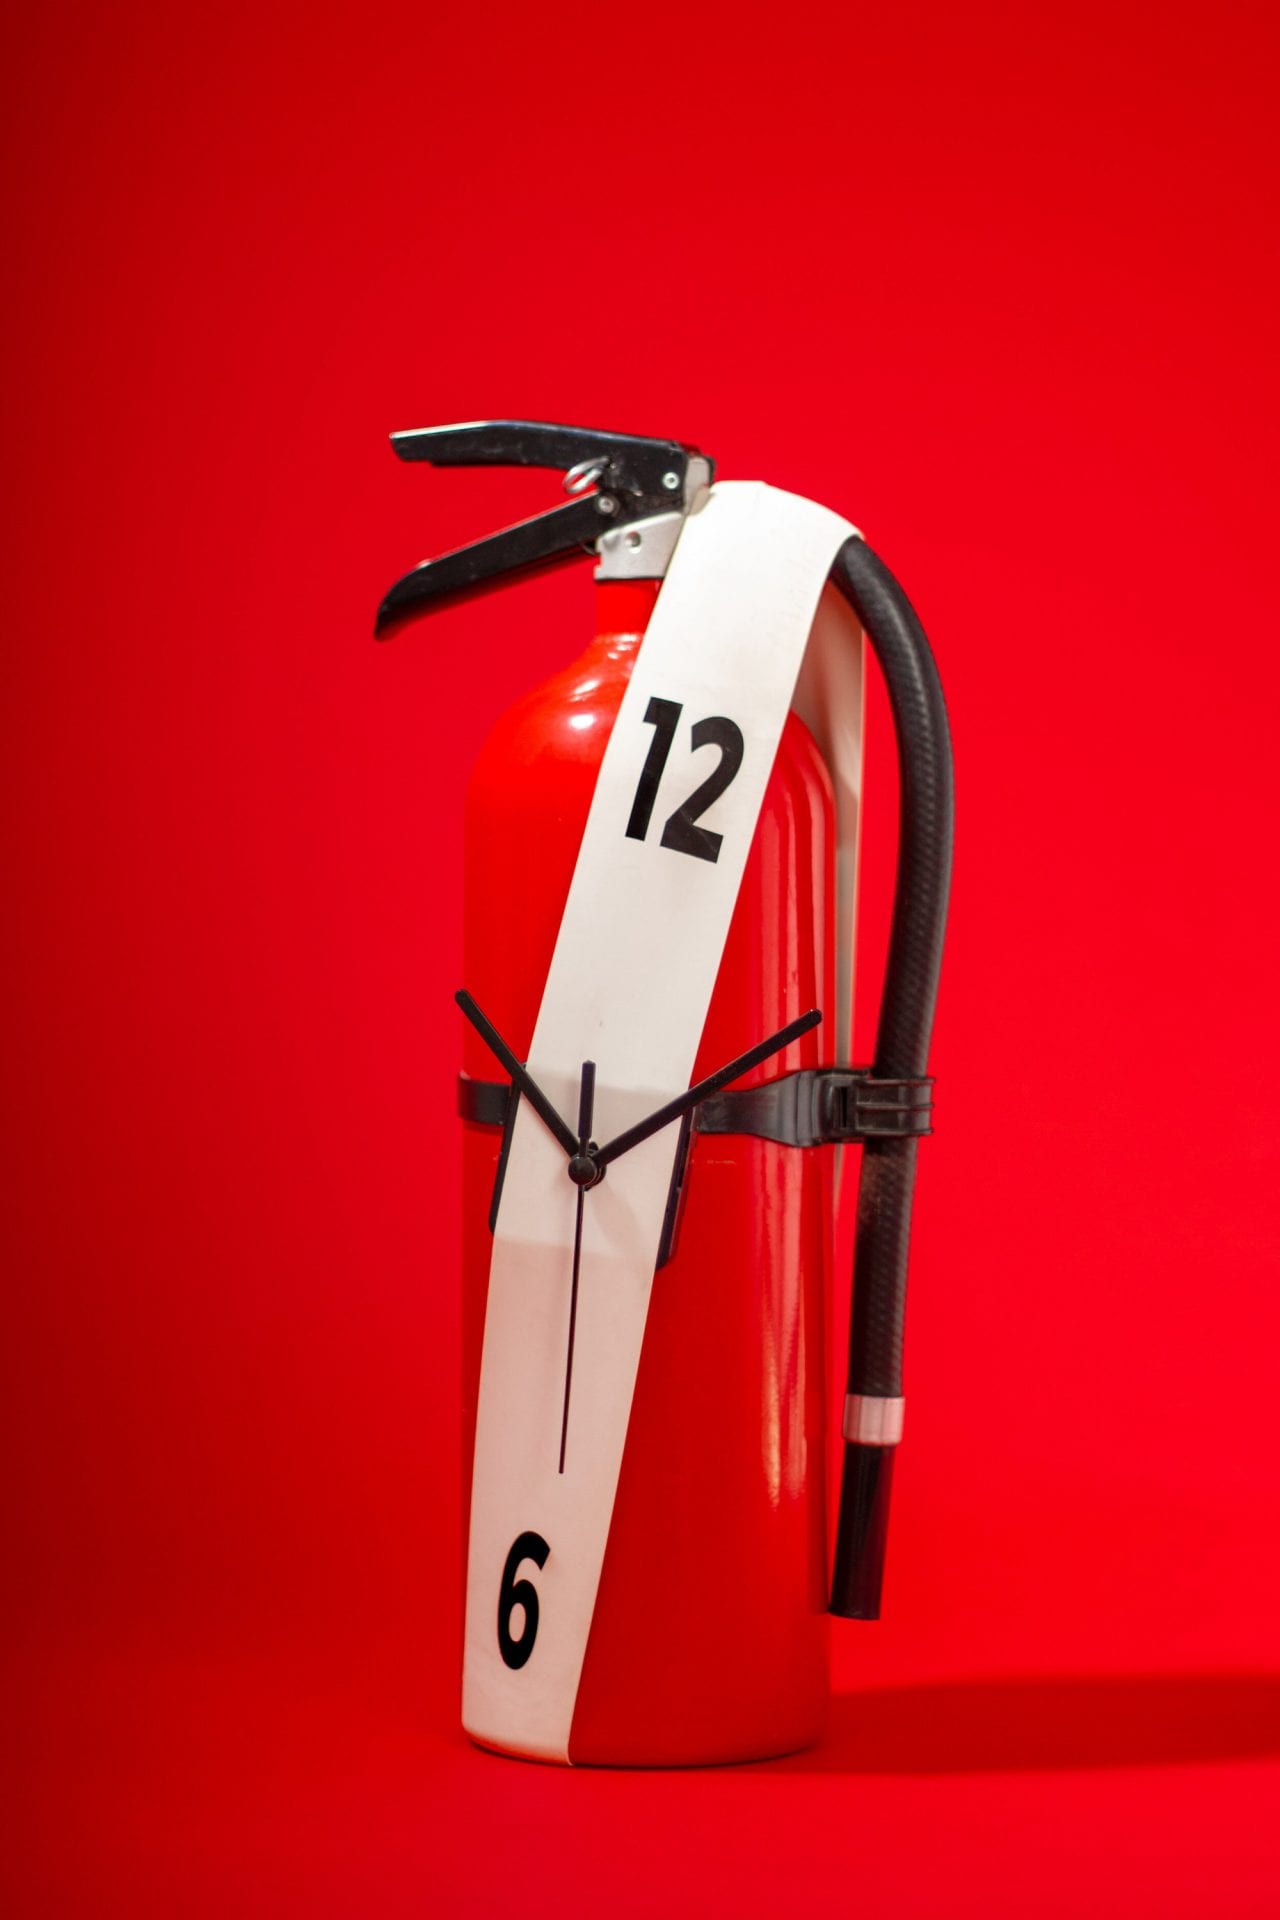 Stretch Clock : un ruban élastique pour transformer n'importe quel objet en horloge